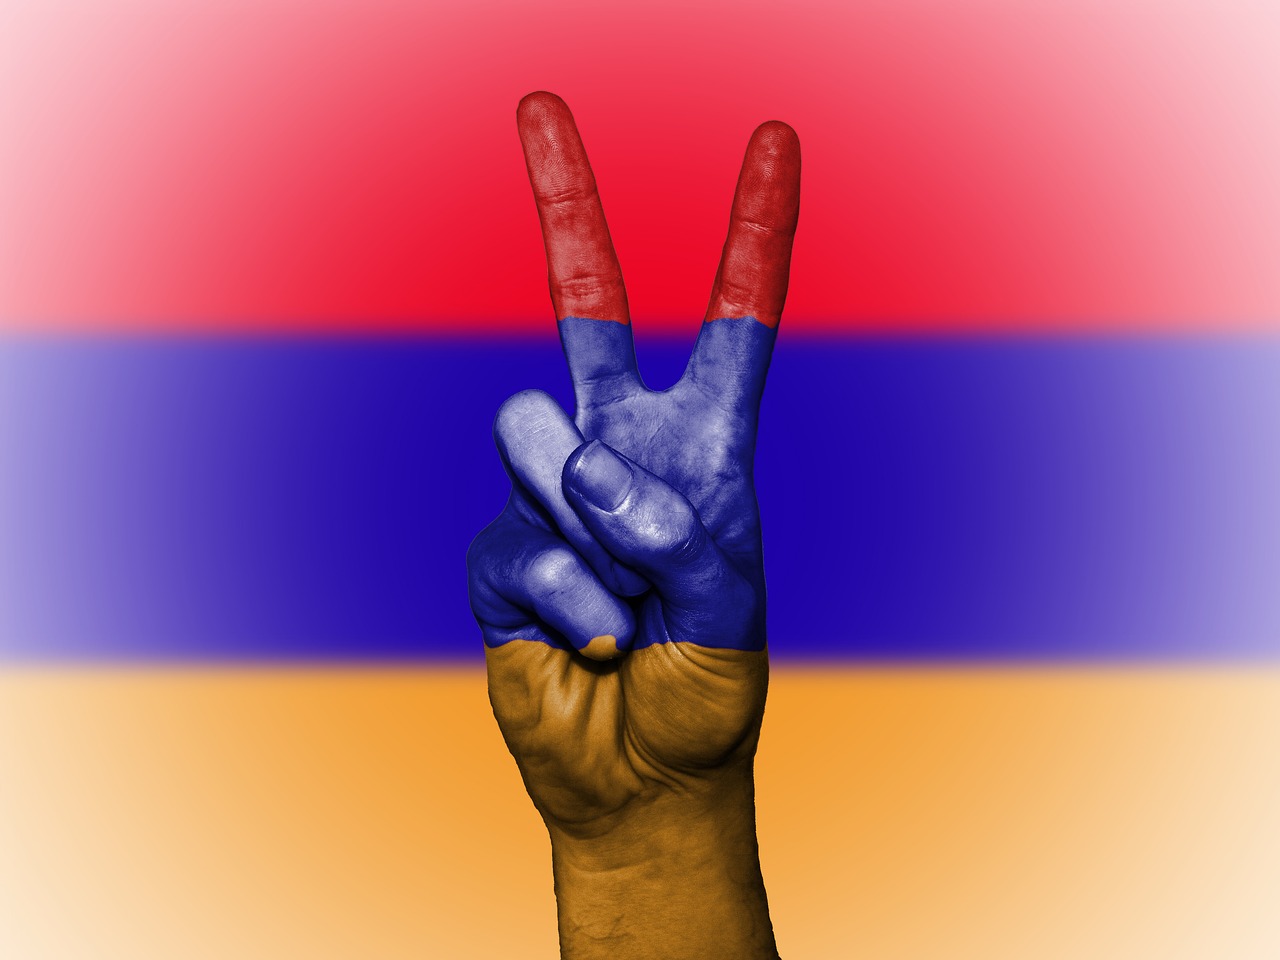 armenia peace flag free photo